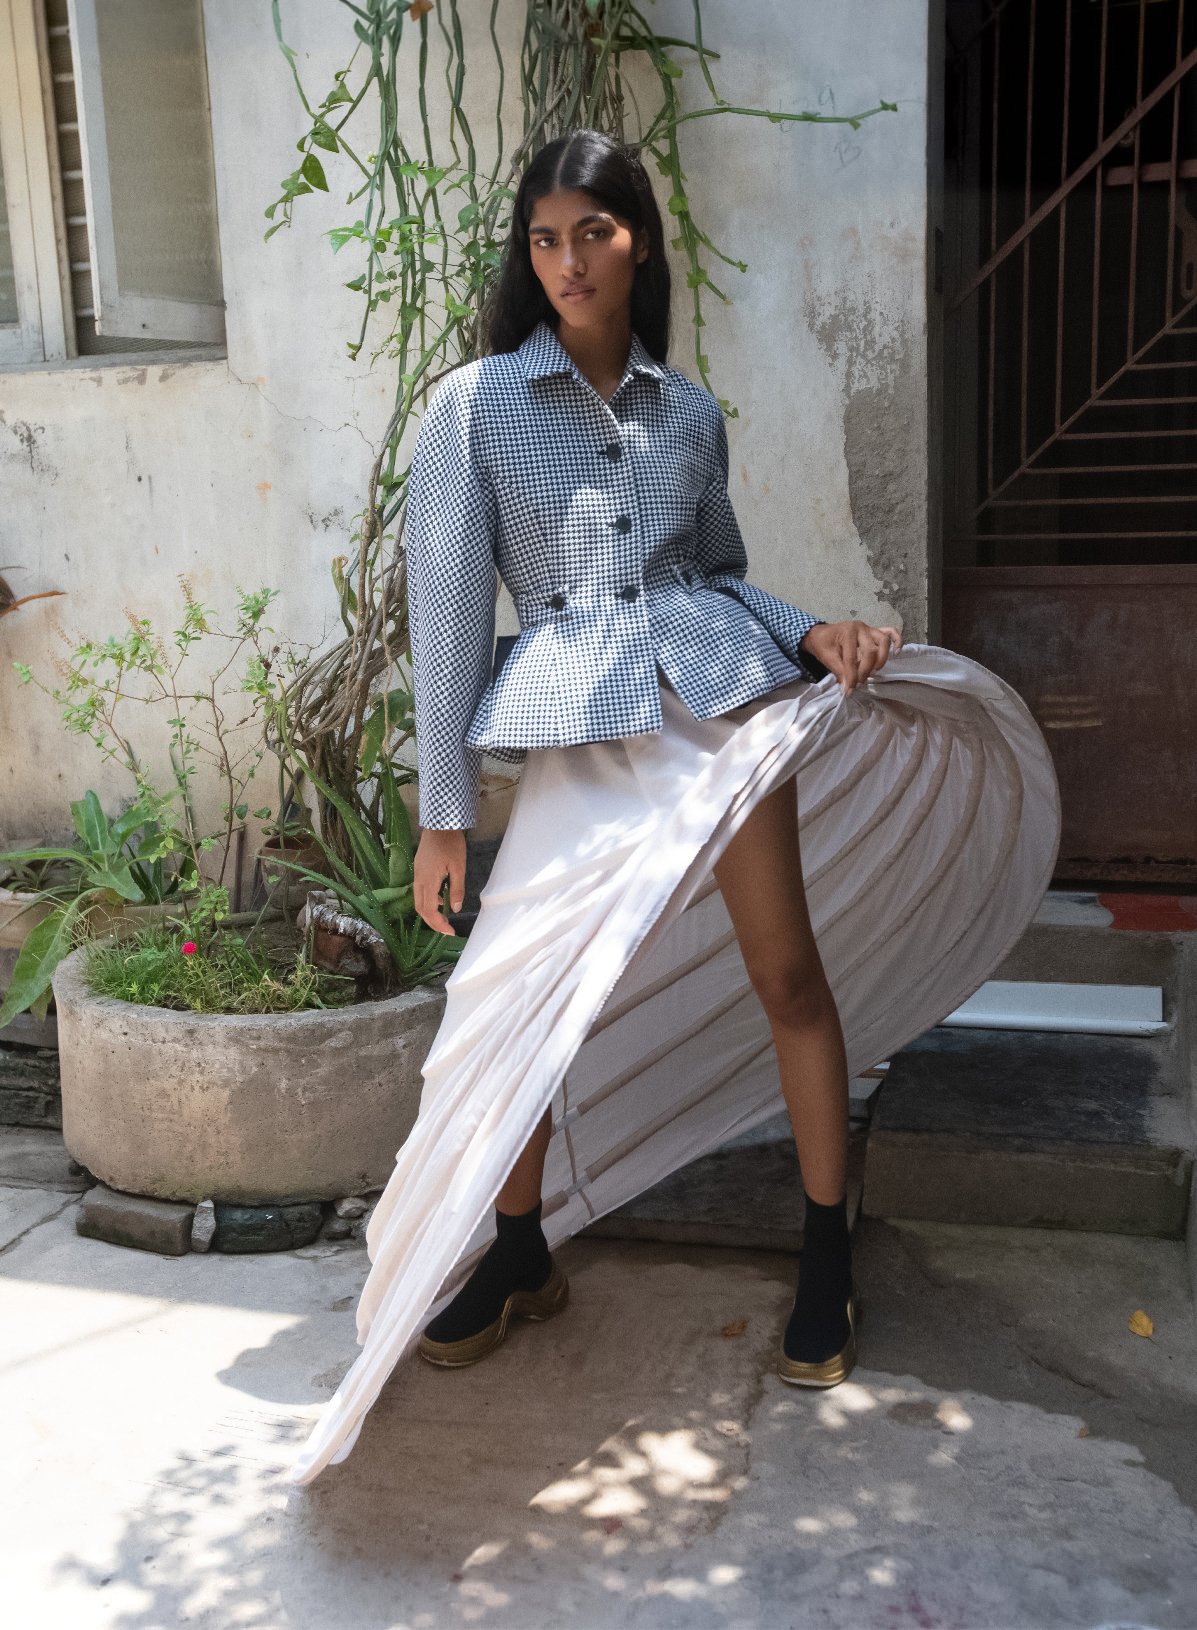 Ashley-Radjarame-by-Nick-Sethi-Vogue-India-Oct-202200014.jpeg